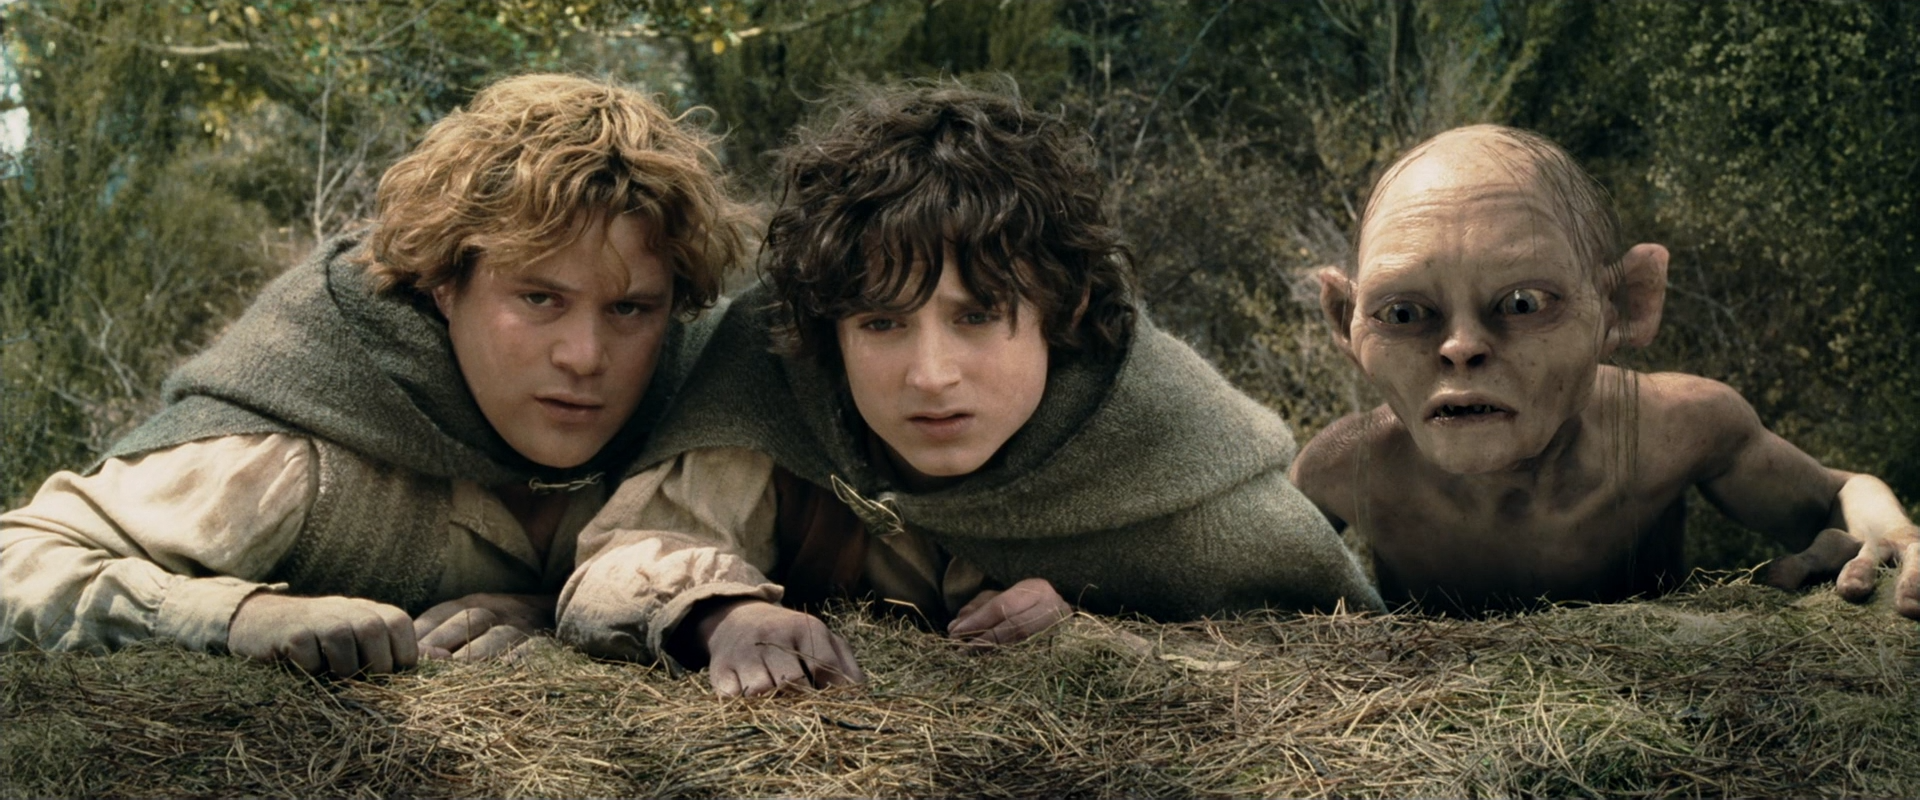 Властелин колец Фродо и Сэм